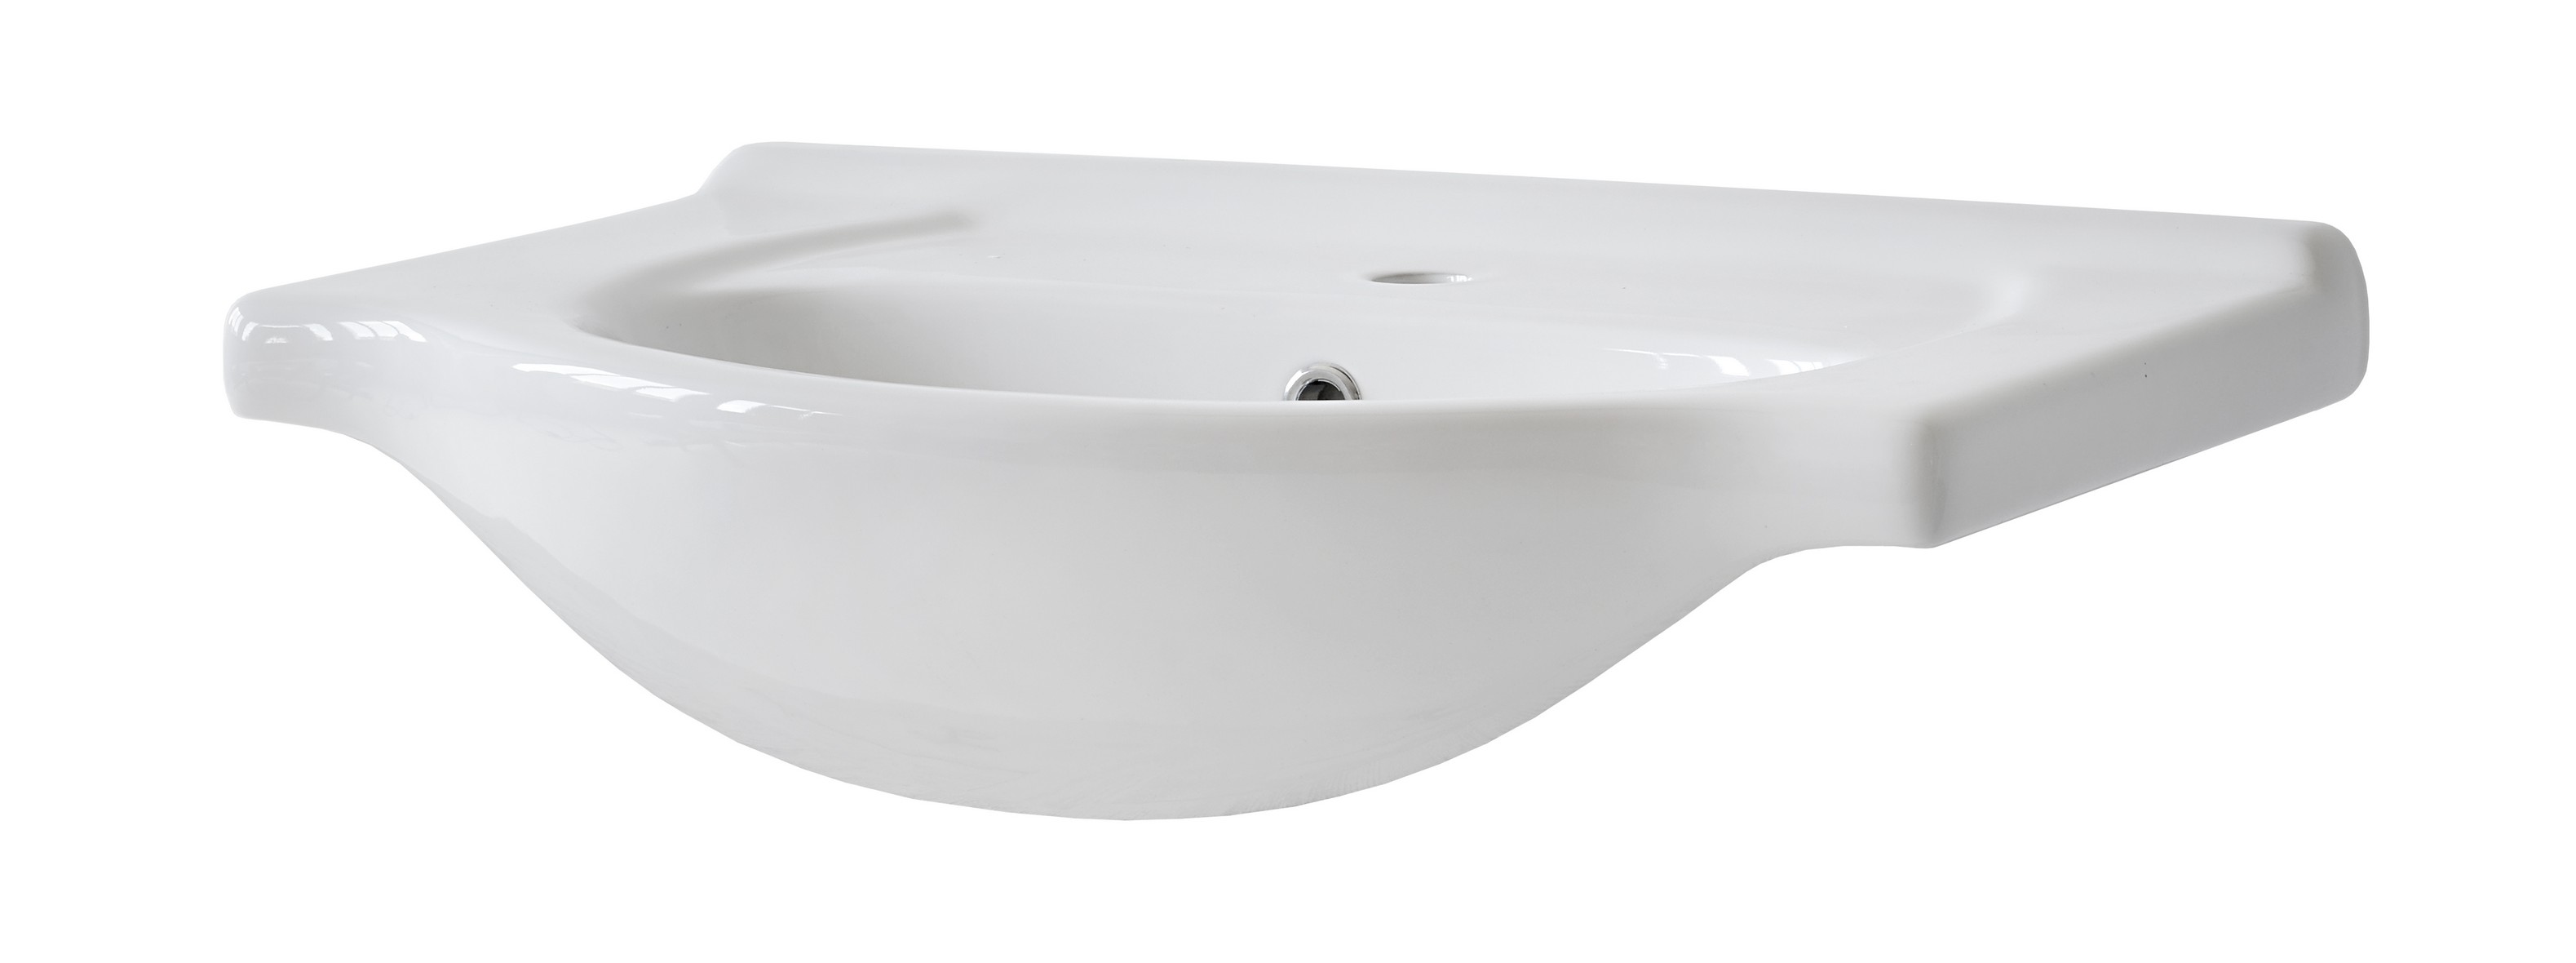 CFP 65 VINTAGE umywalka ceramiczna 65cm / washbasin 65cm/lavoar 65